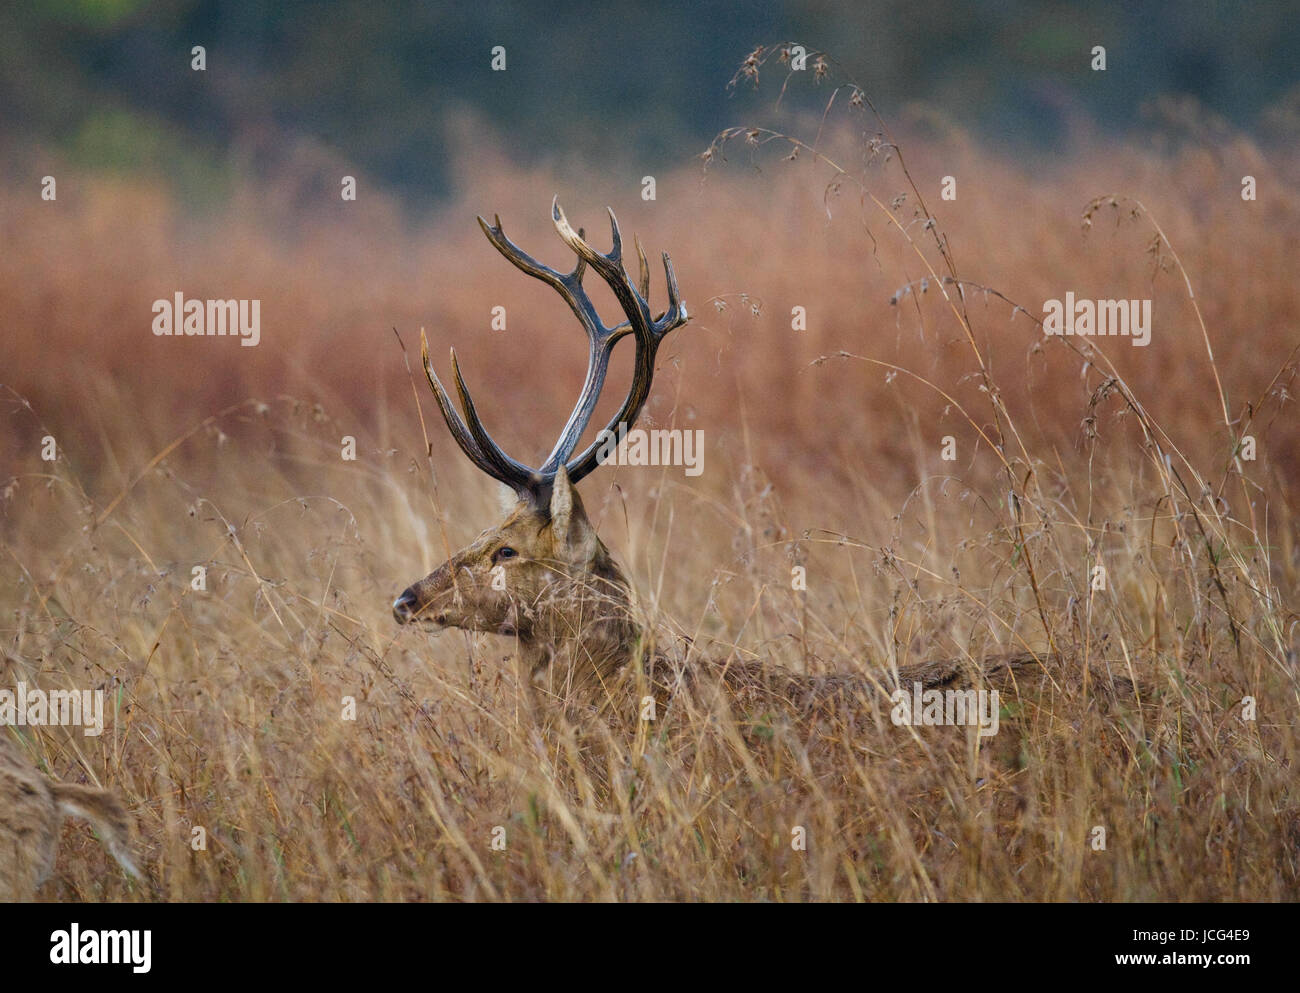 Avec de belles cornes de cerf debout dans l'herbe à l'état sauvage. L'Inde. Parc national. Une excellente illustration. Banque D'Images